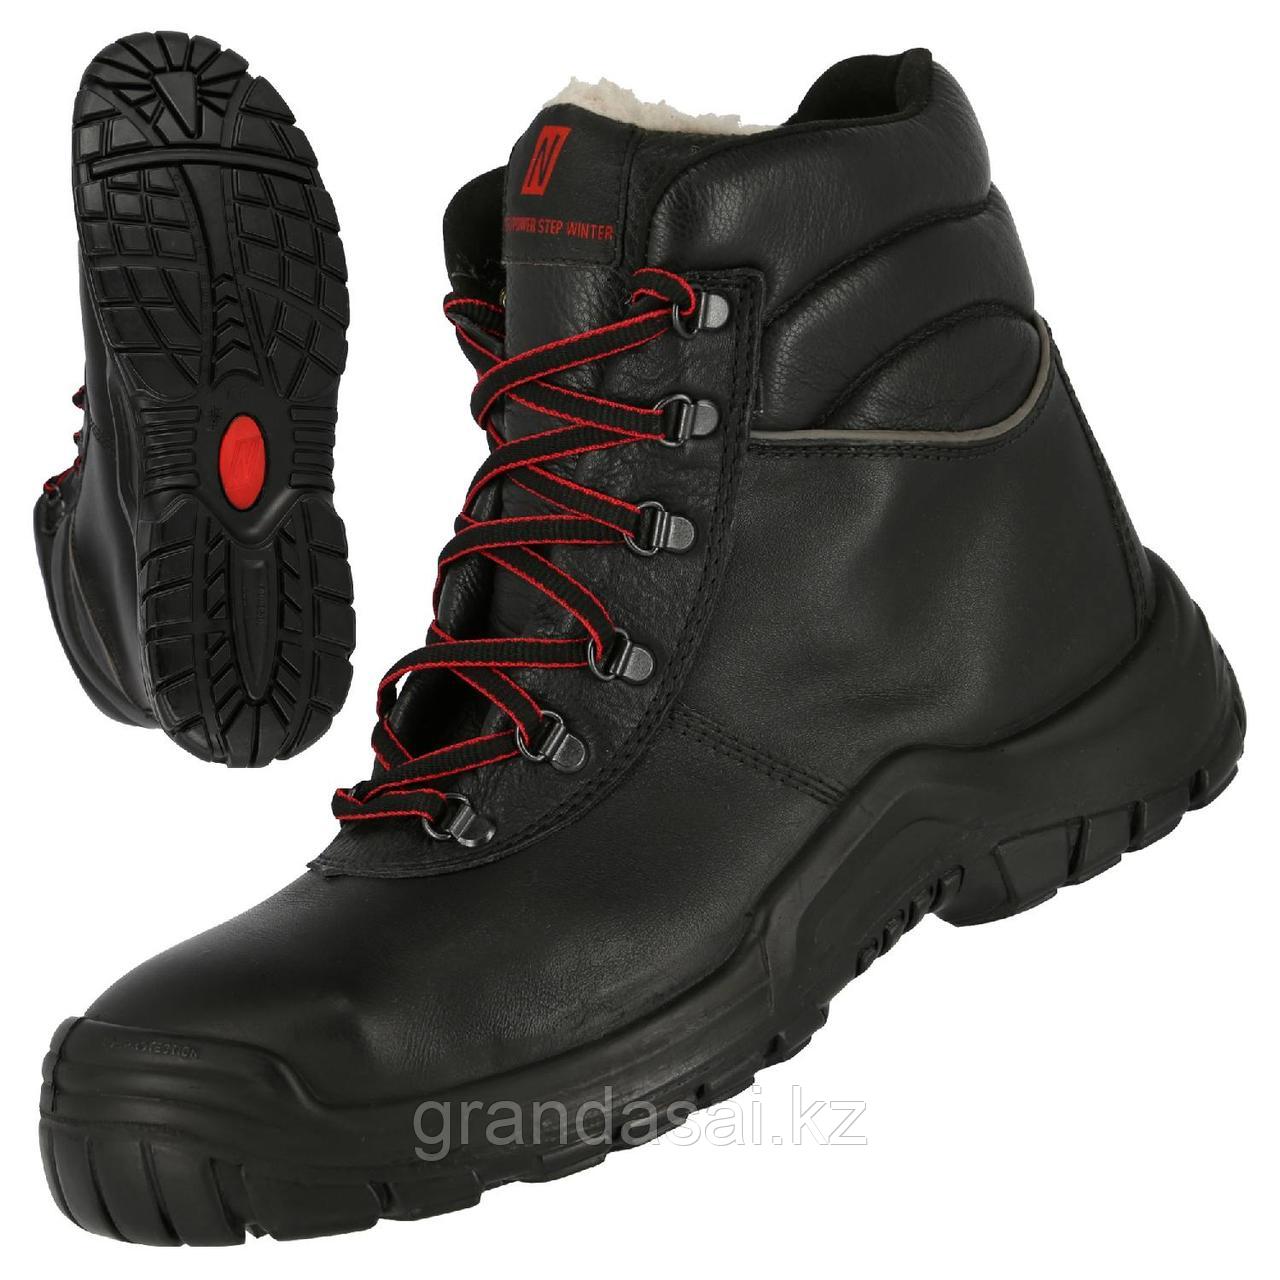 NITRAS 7213W, защитные зимние ботинки, класс защиты S3 CI HRO SRC, металлический подносок